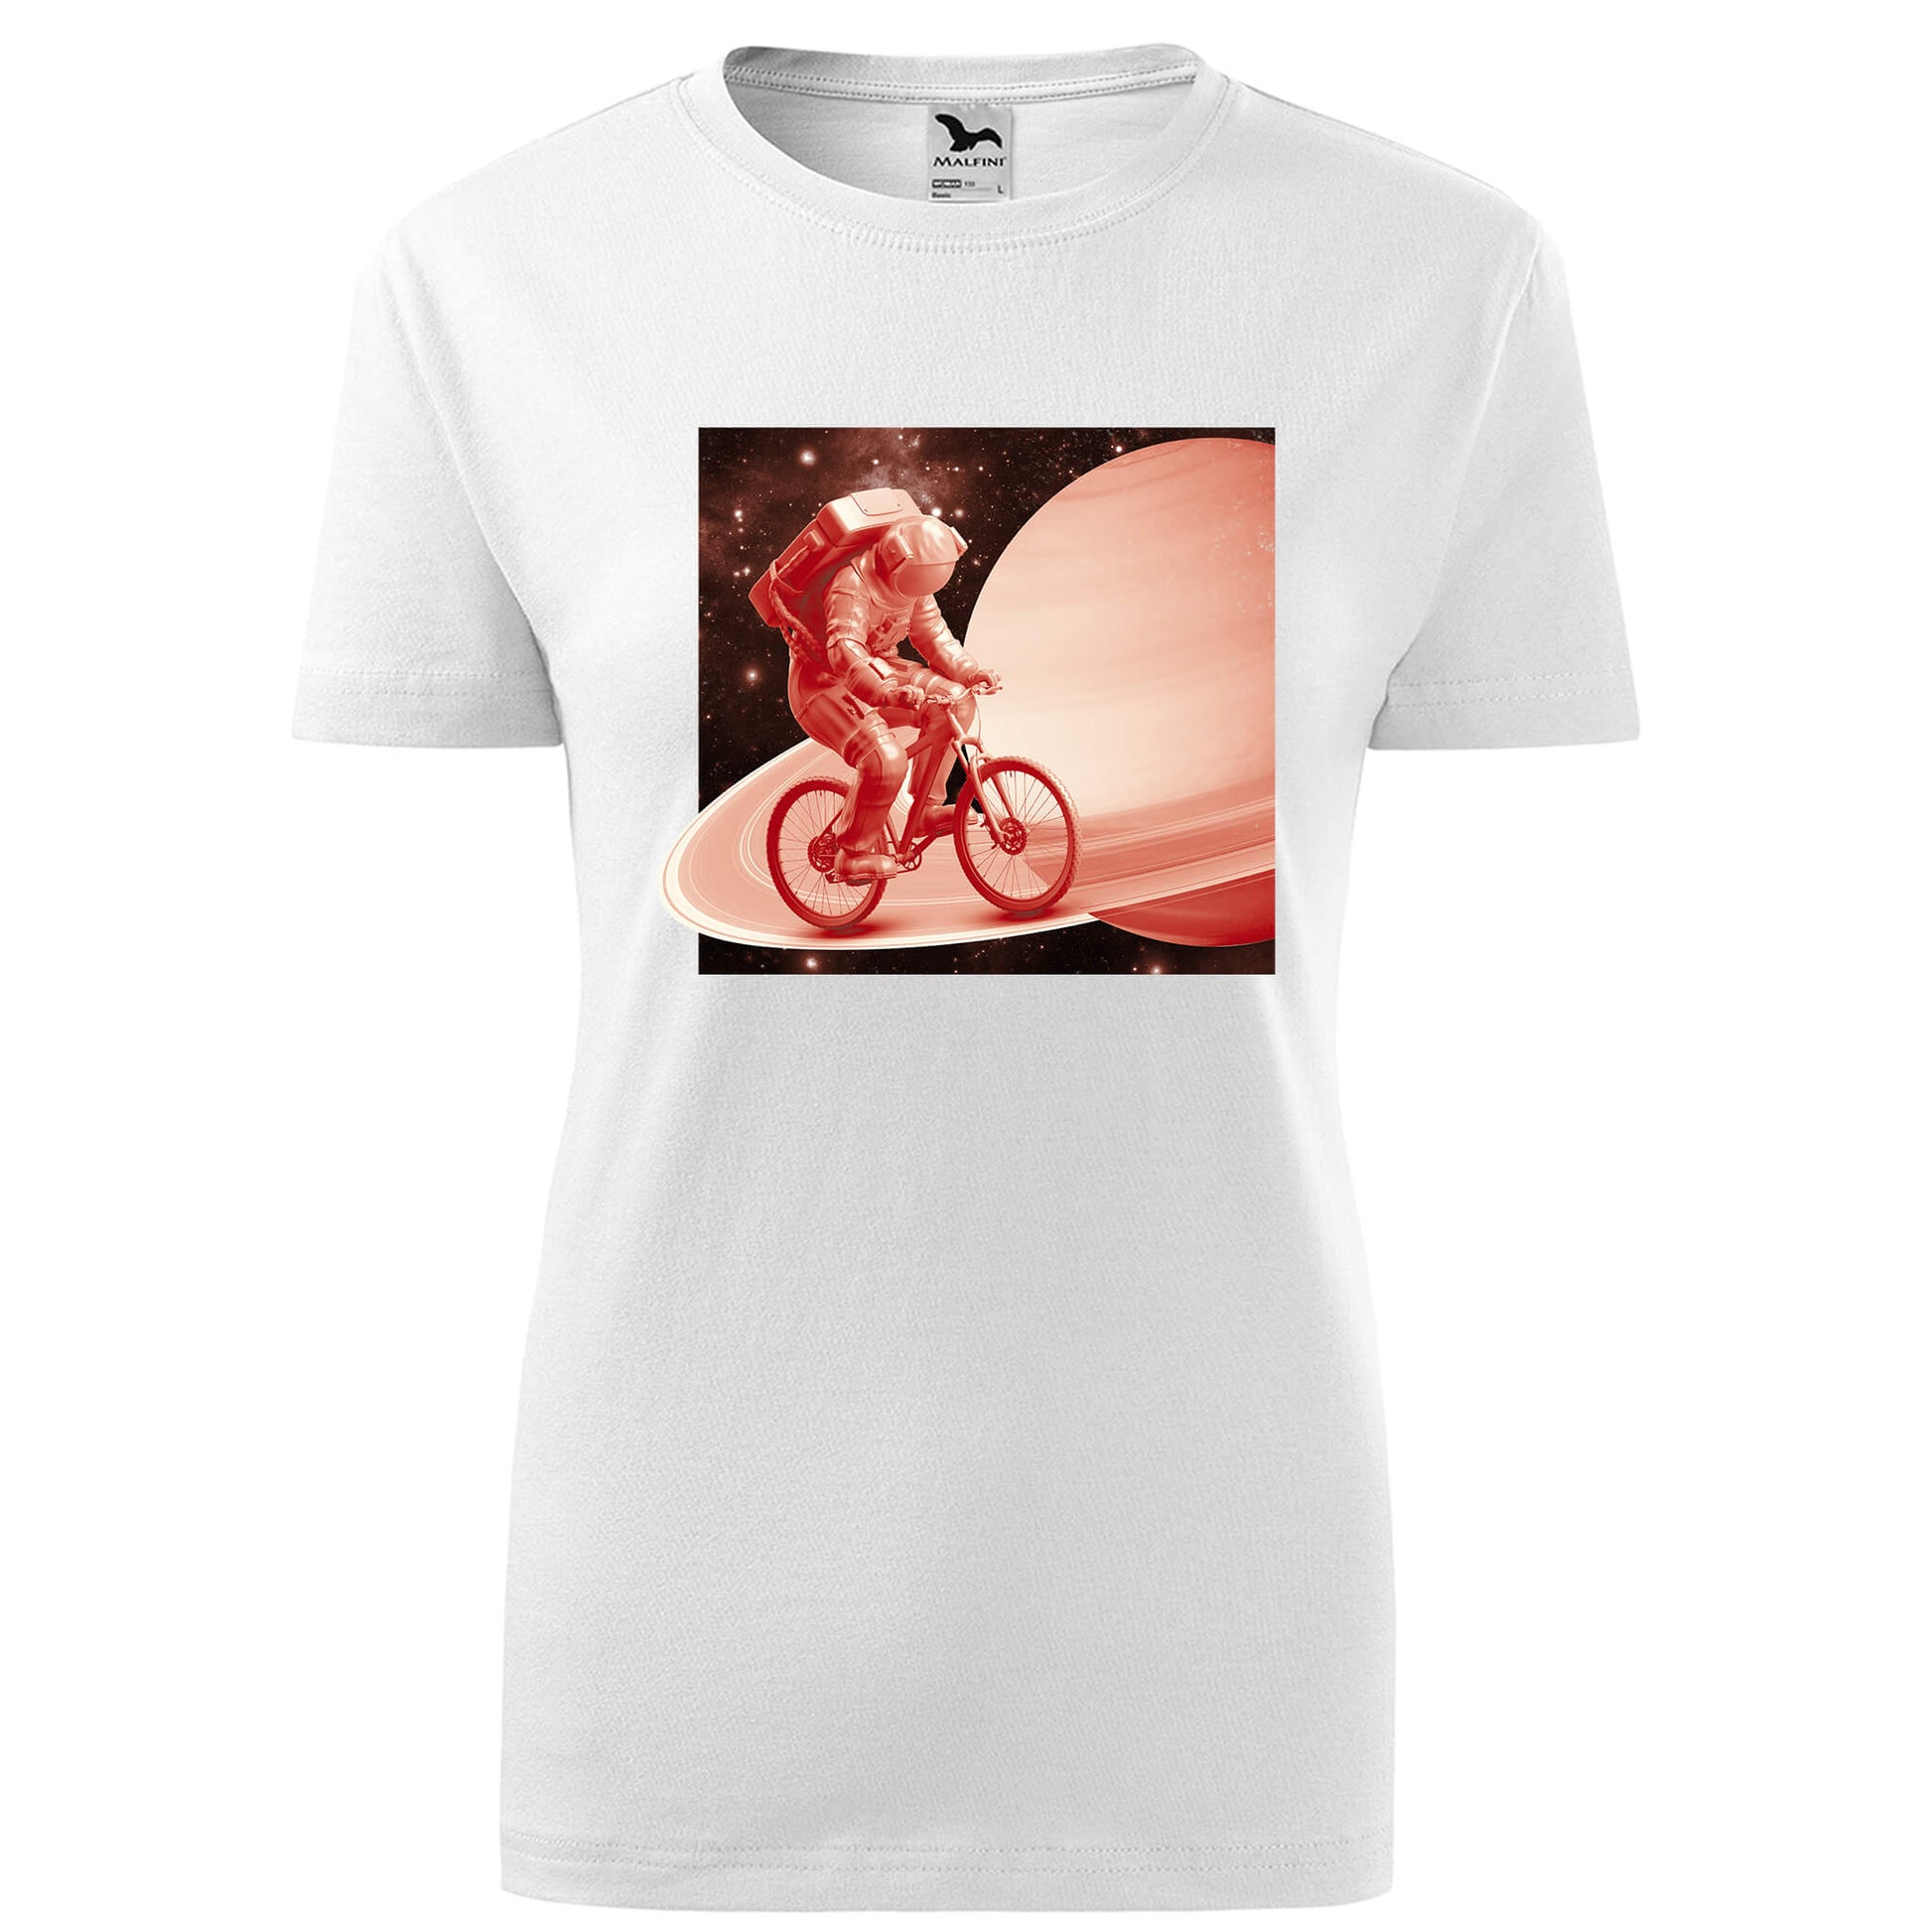 Astronaut riding a bicycle t-shirt - rvdesignprint